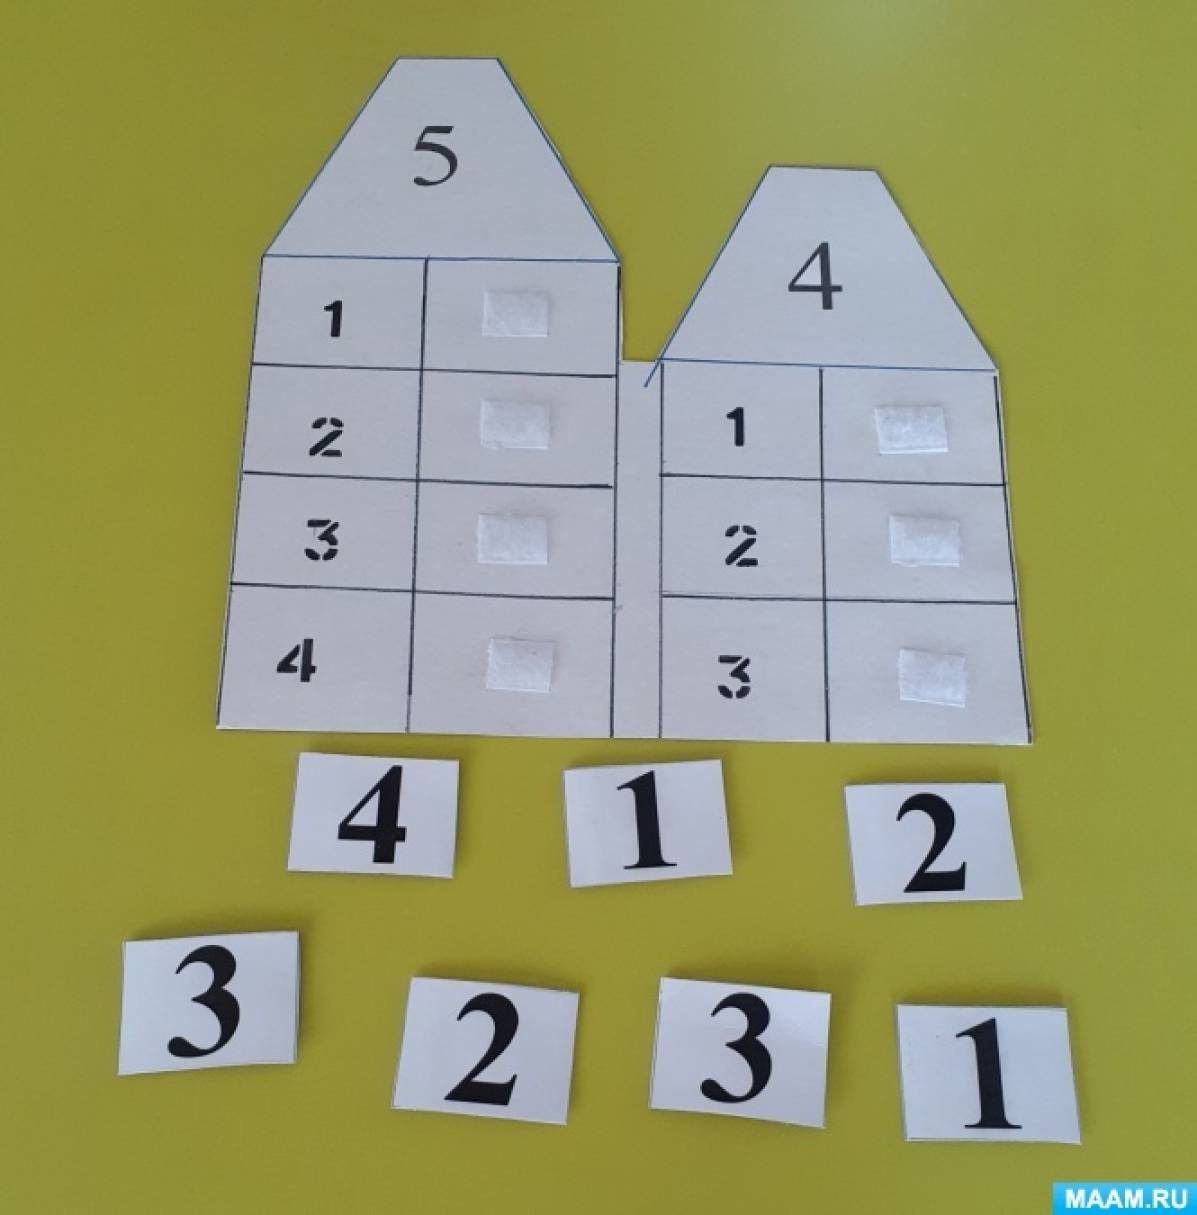 Формирование элементарных математических представлений у дошкольников посредством дидактических игр